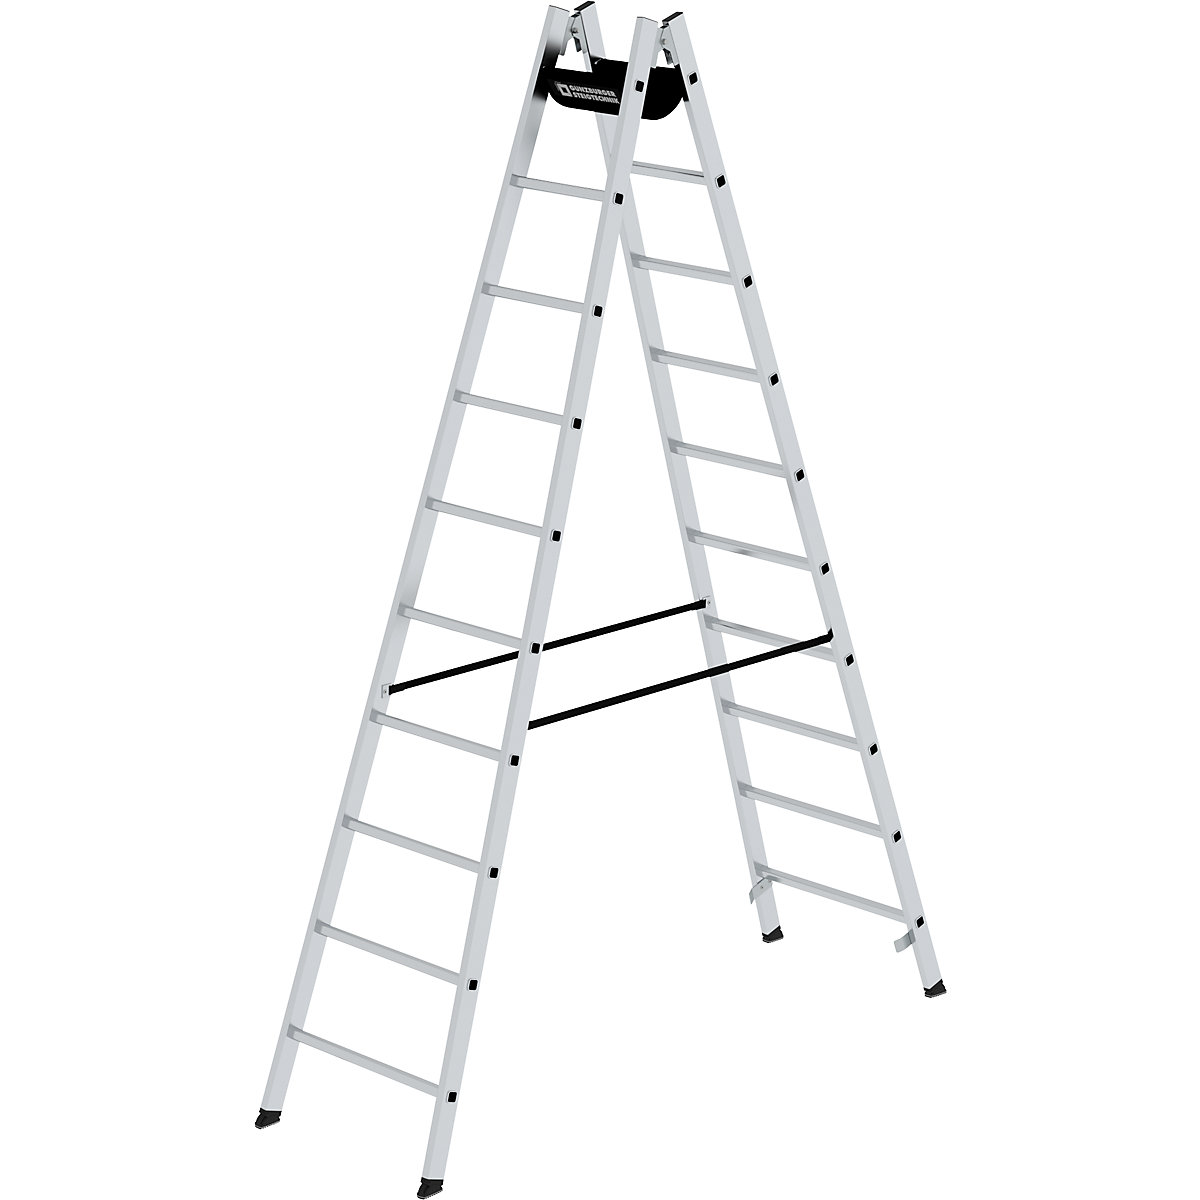 Bezpečnostný rebrík s priečkami, pochôdzny z oboch strán – MUNK, priečky 30 x 30 mm, nešmykľavé, 2 x 10 priečok-11